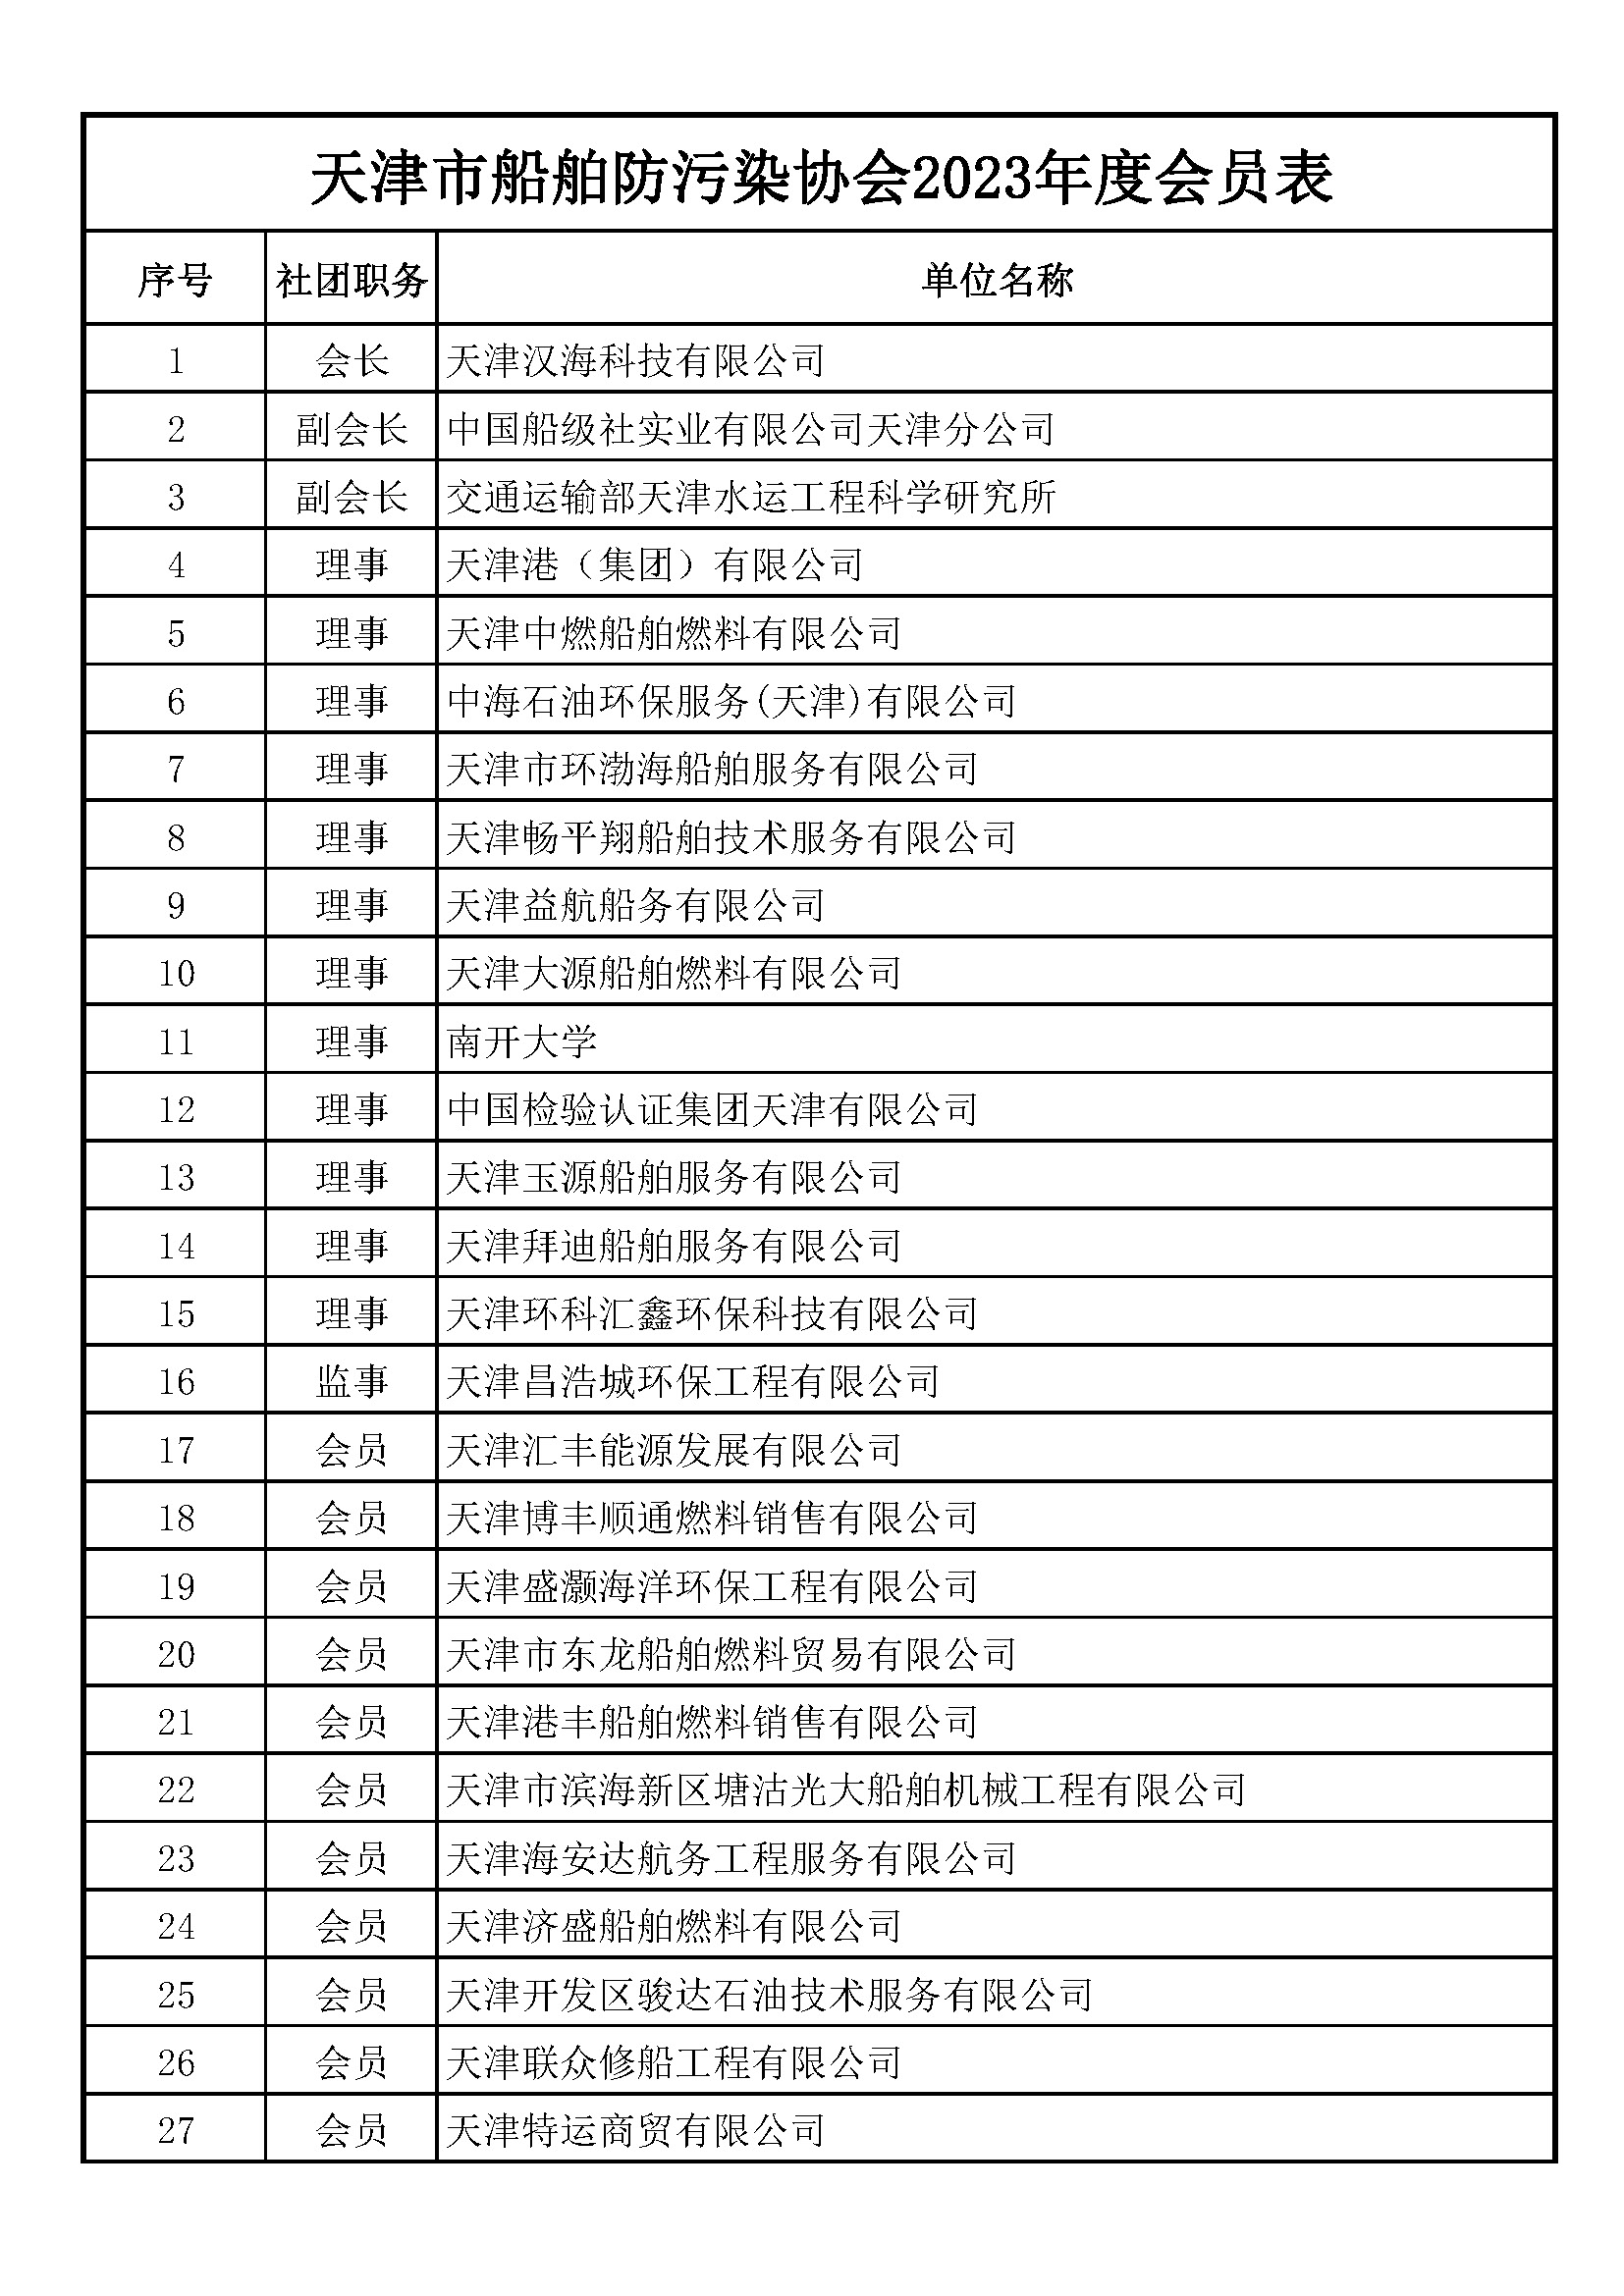 天津市船舶防污染协会2023年度会员表_页面_1.jpg